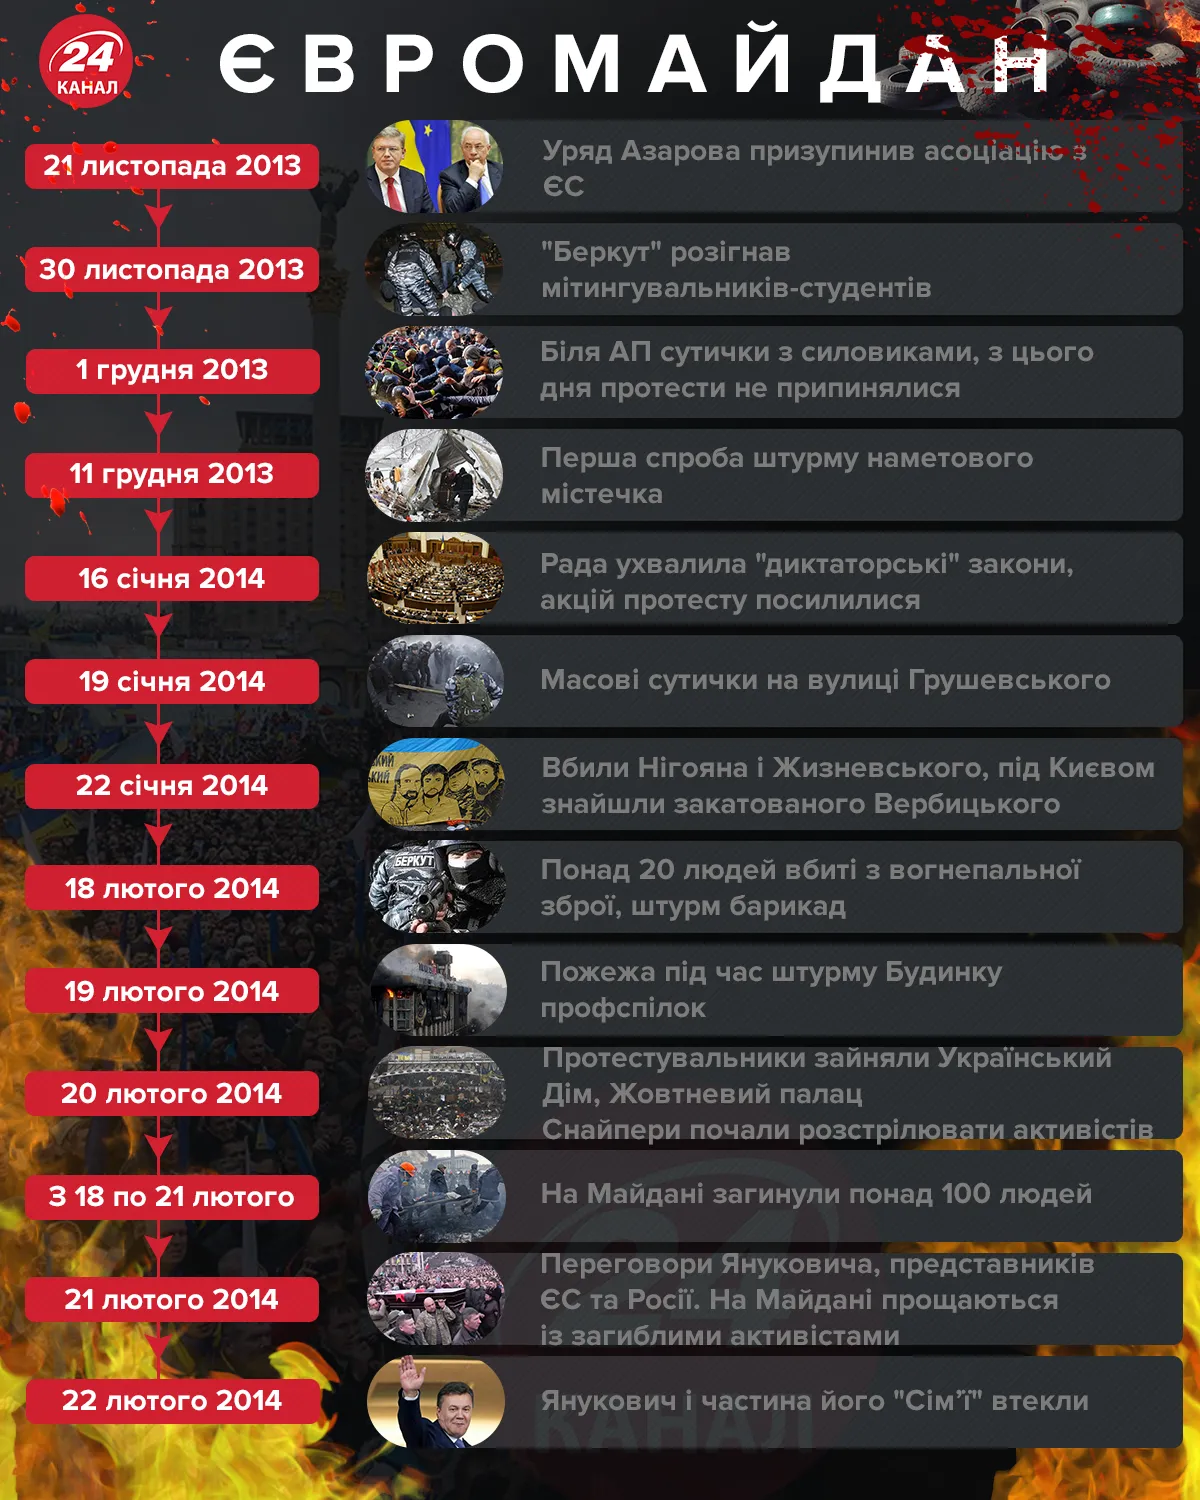 Євромайдан Революція Гідності хронологія подій 2013 - 2014 інфографіка